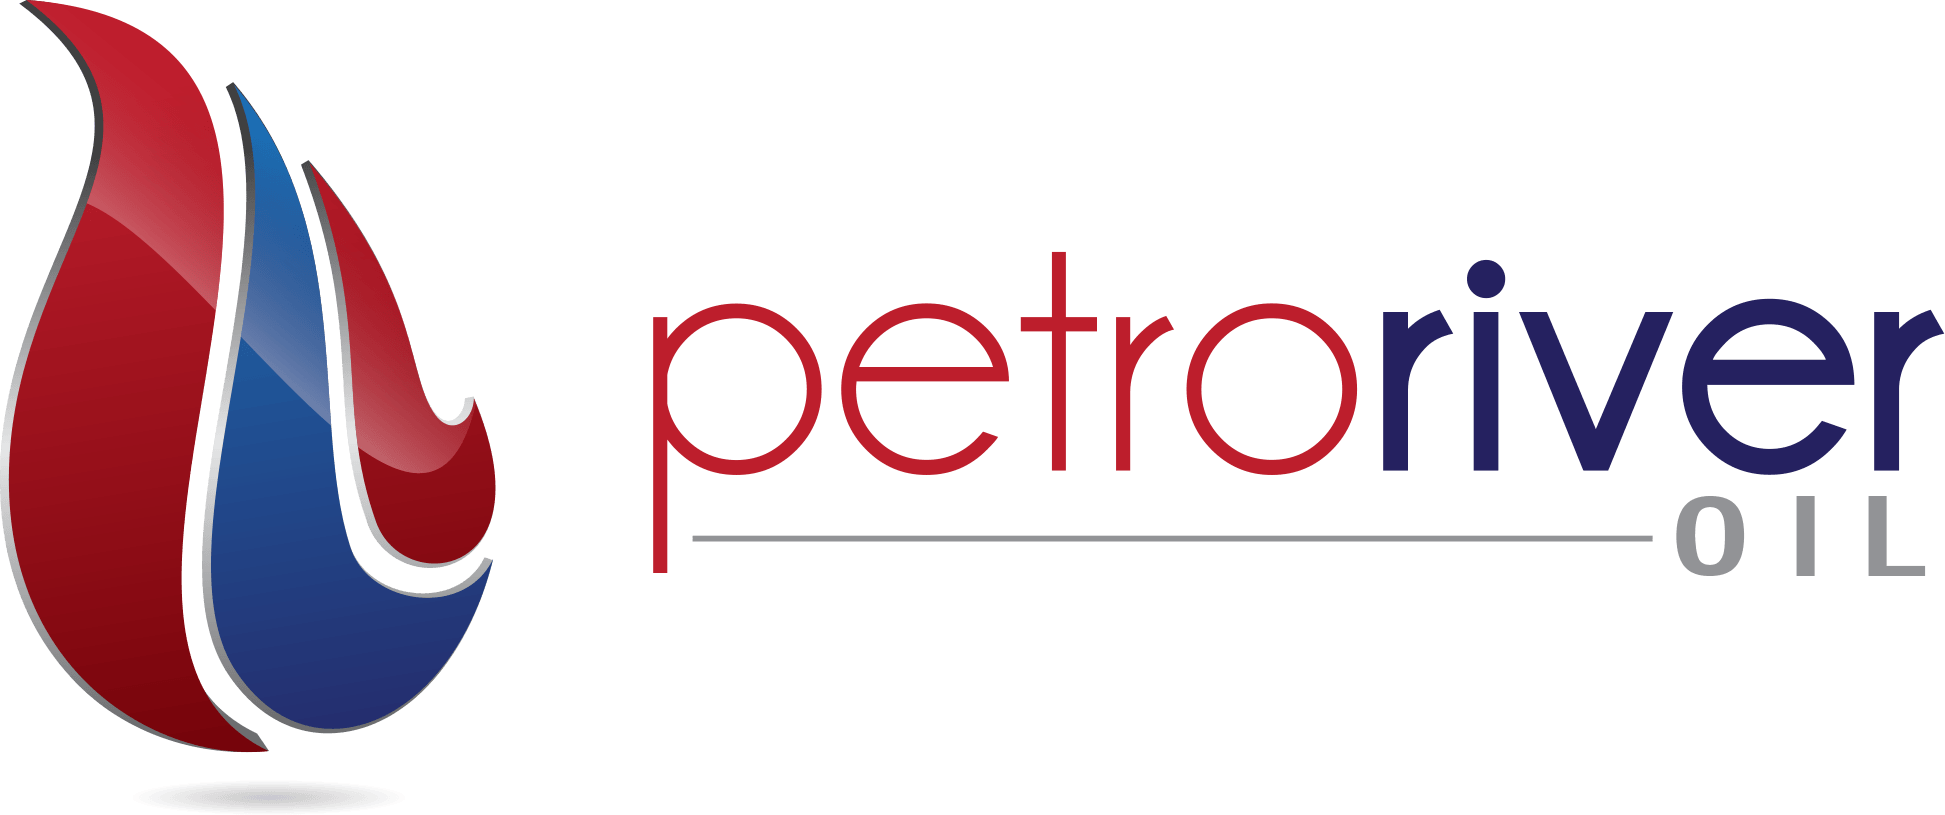 Oil Co Logo - Petro River Oil